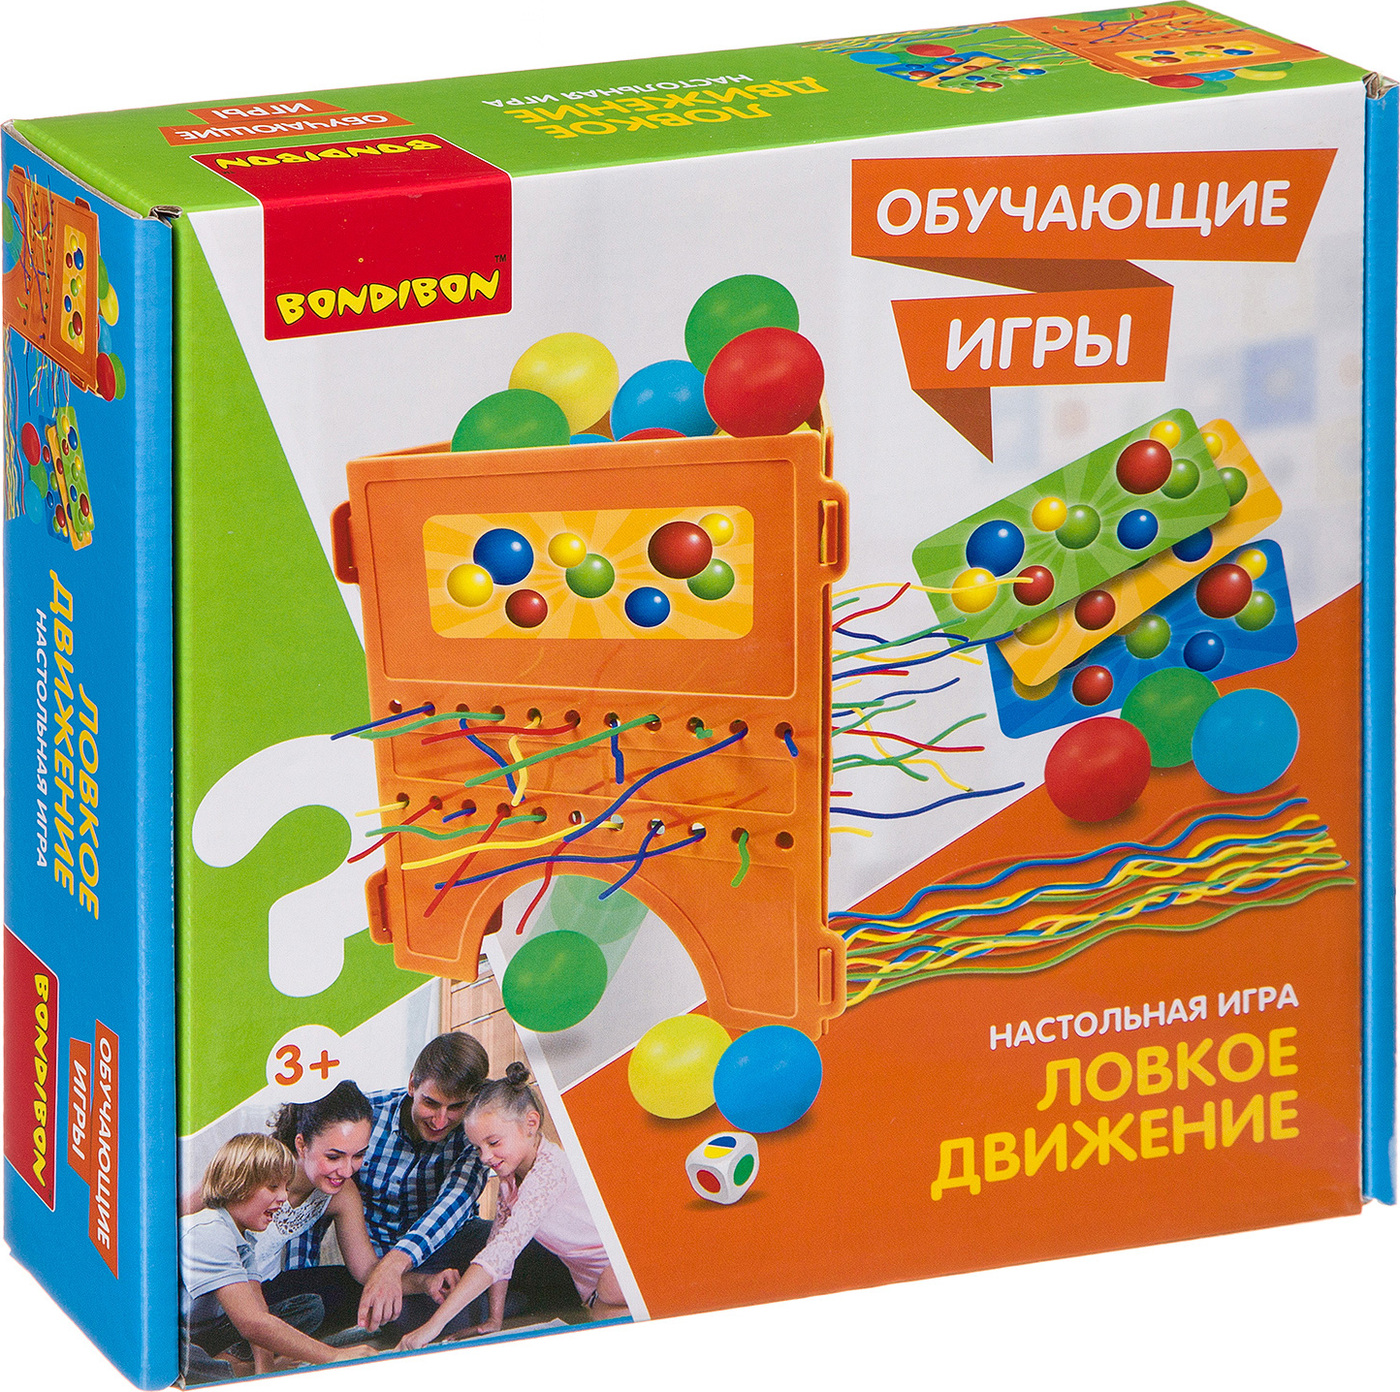 Бондибон Интернет Магазин Детских Товаров Москва